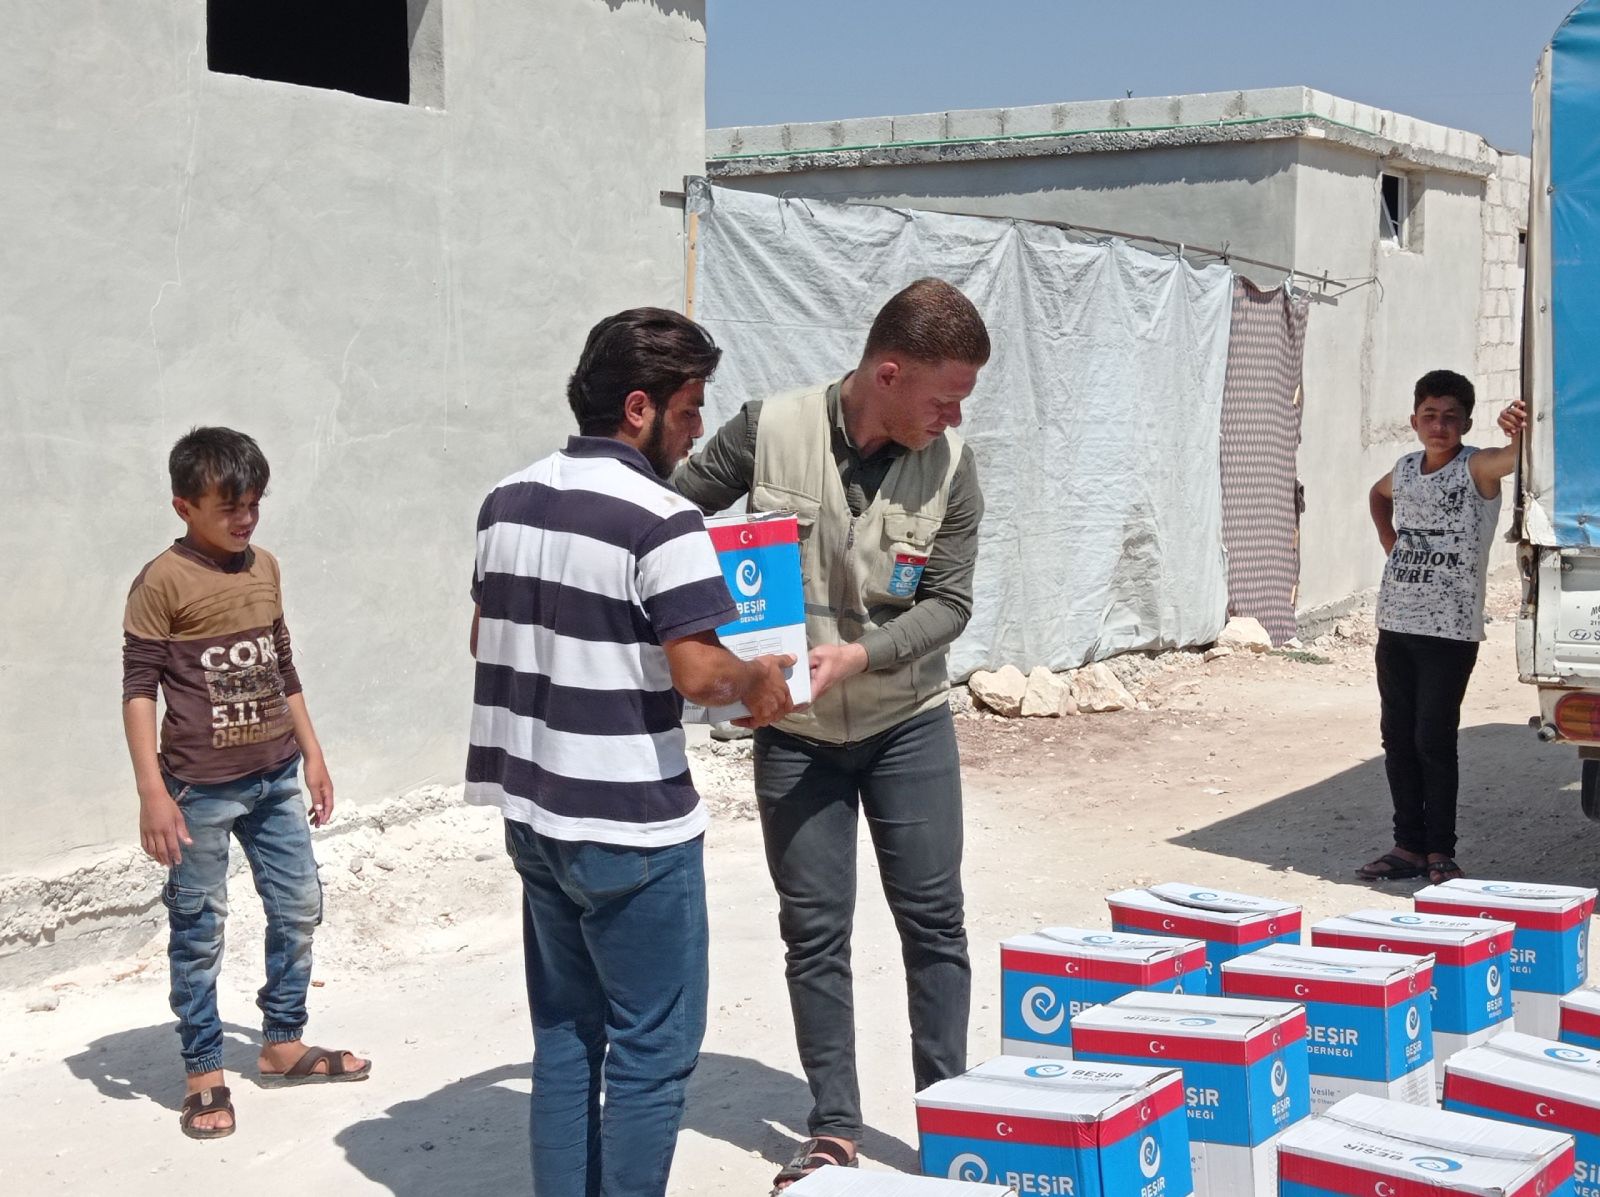 Suriye’de Kumanya ve Temel İhtiyaç Malzemeleri Dağıtımı